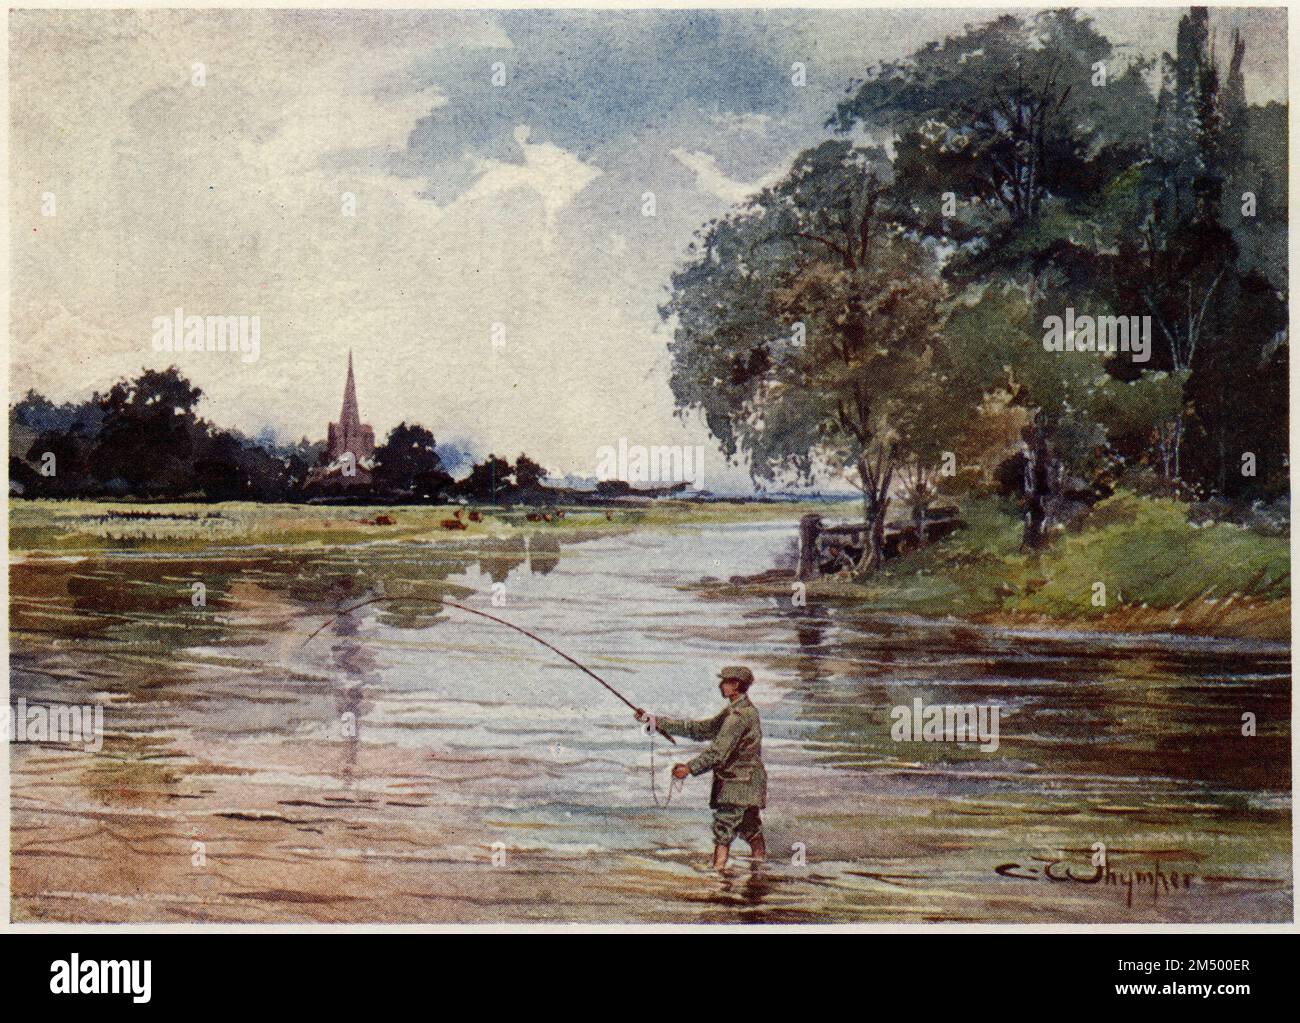 Mezzitono di un dipinto ad acquerello di Charles Whymper che mostra un pescatore di trote nel fiume Avon a Hants, Inghilterra, pubblicato nel 1906 Foto Stock